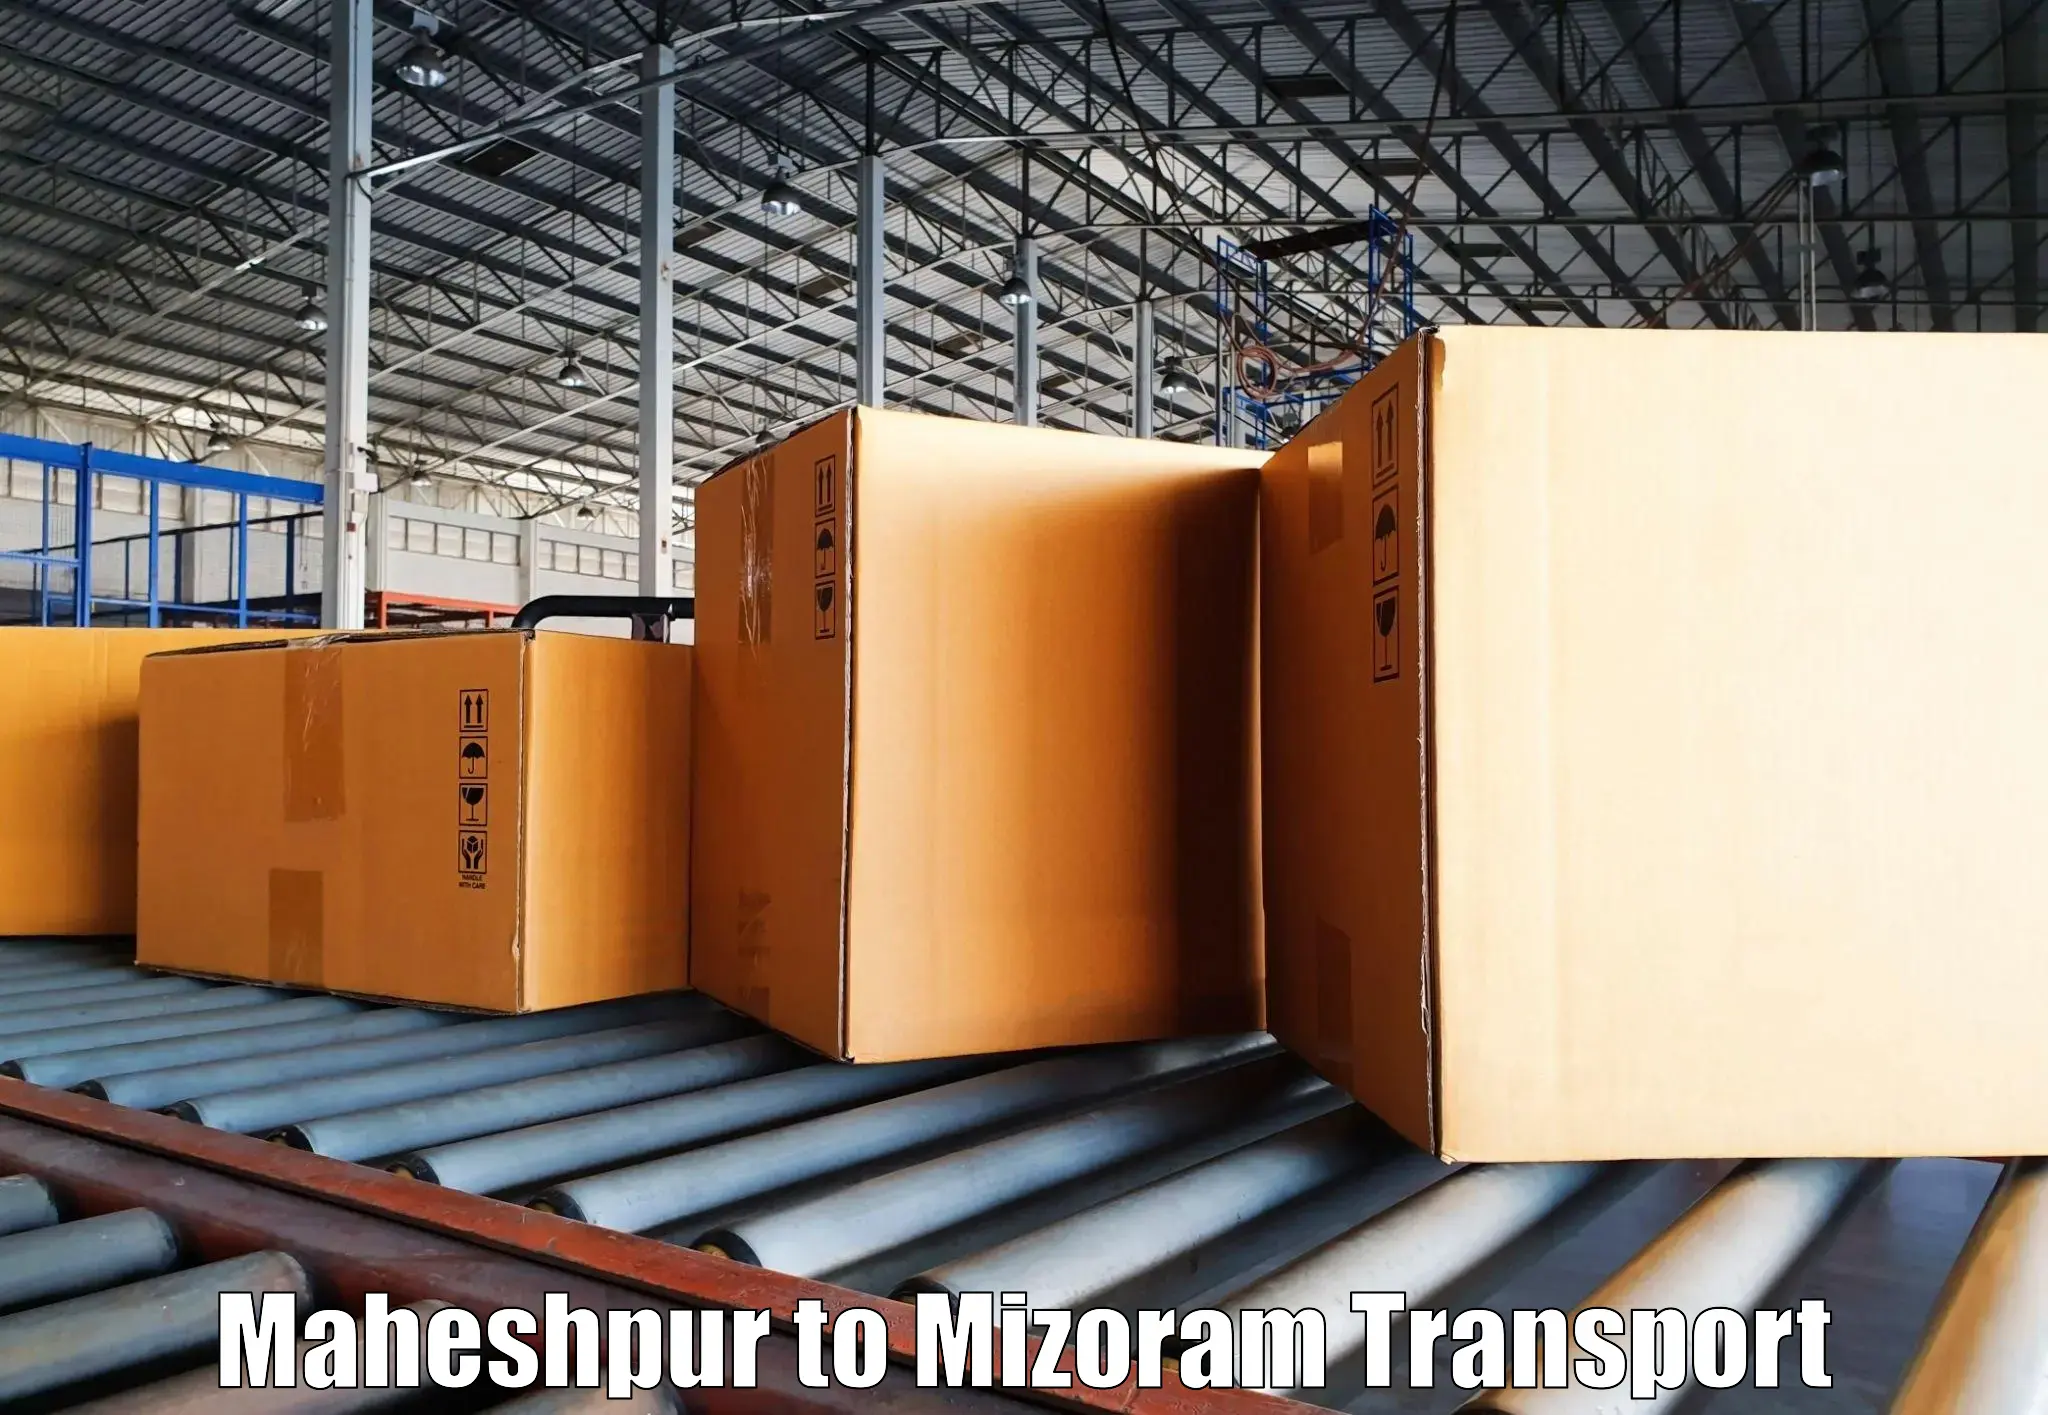 Best transport services in India Maheshpur to Mizoram